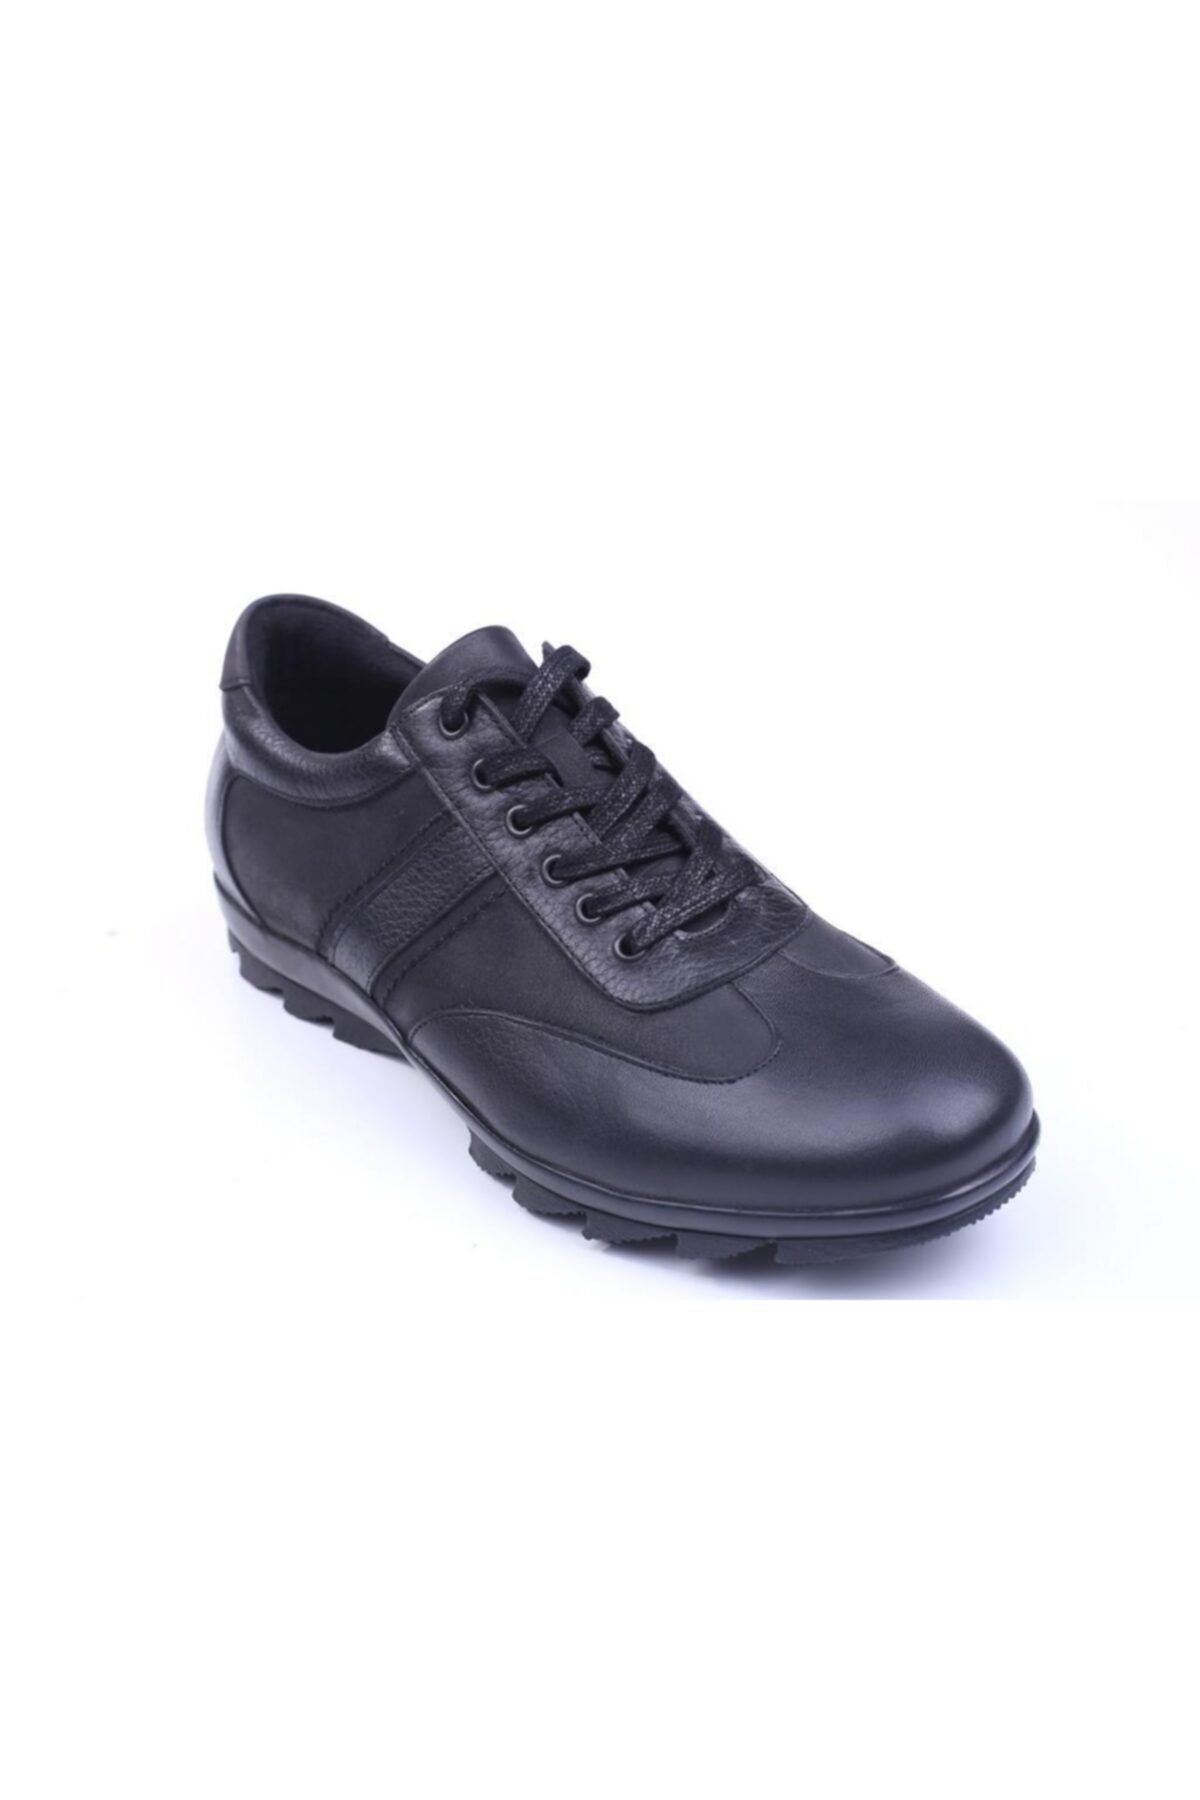 Fosco 6505 Erkek Hakiki Deri Spor Sıcak Astar Siyah Ayakkabı